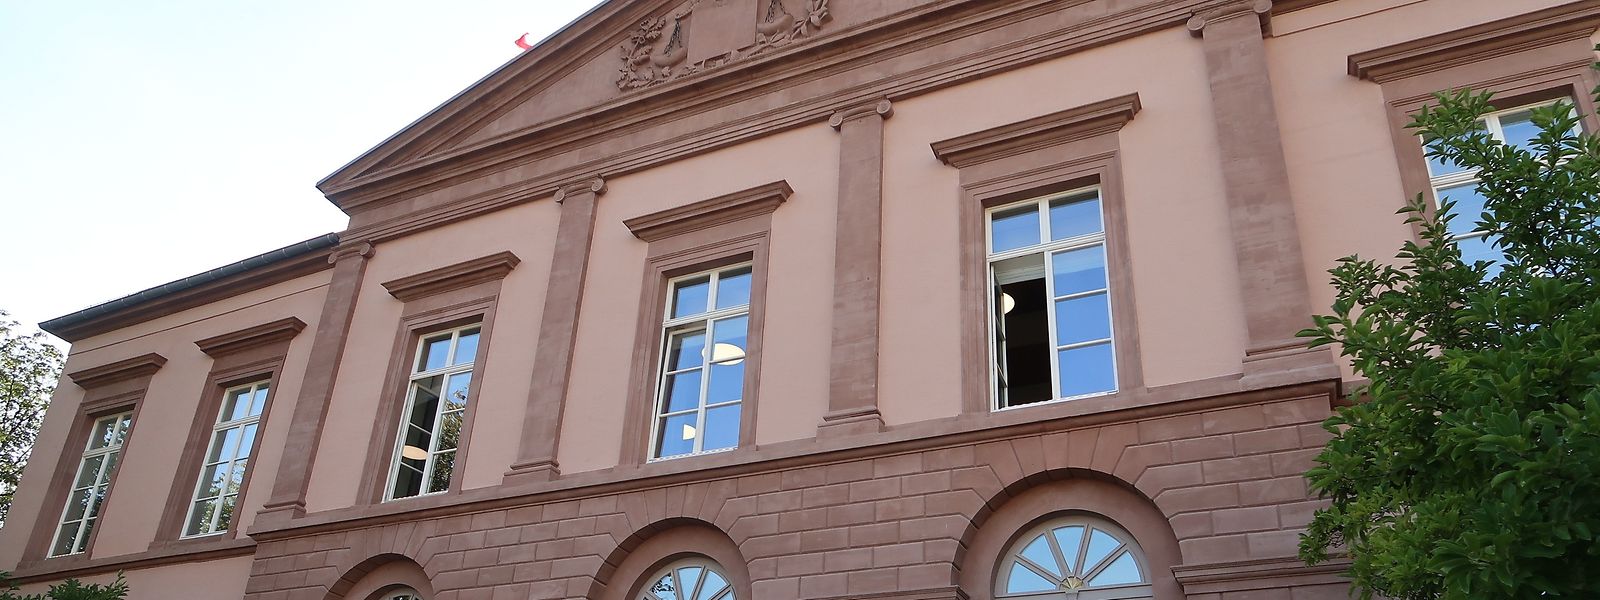 Le tribunal de Diekirch a rendu jeudi un jugement de principe.